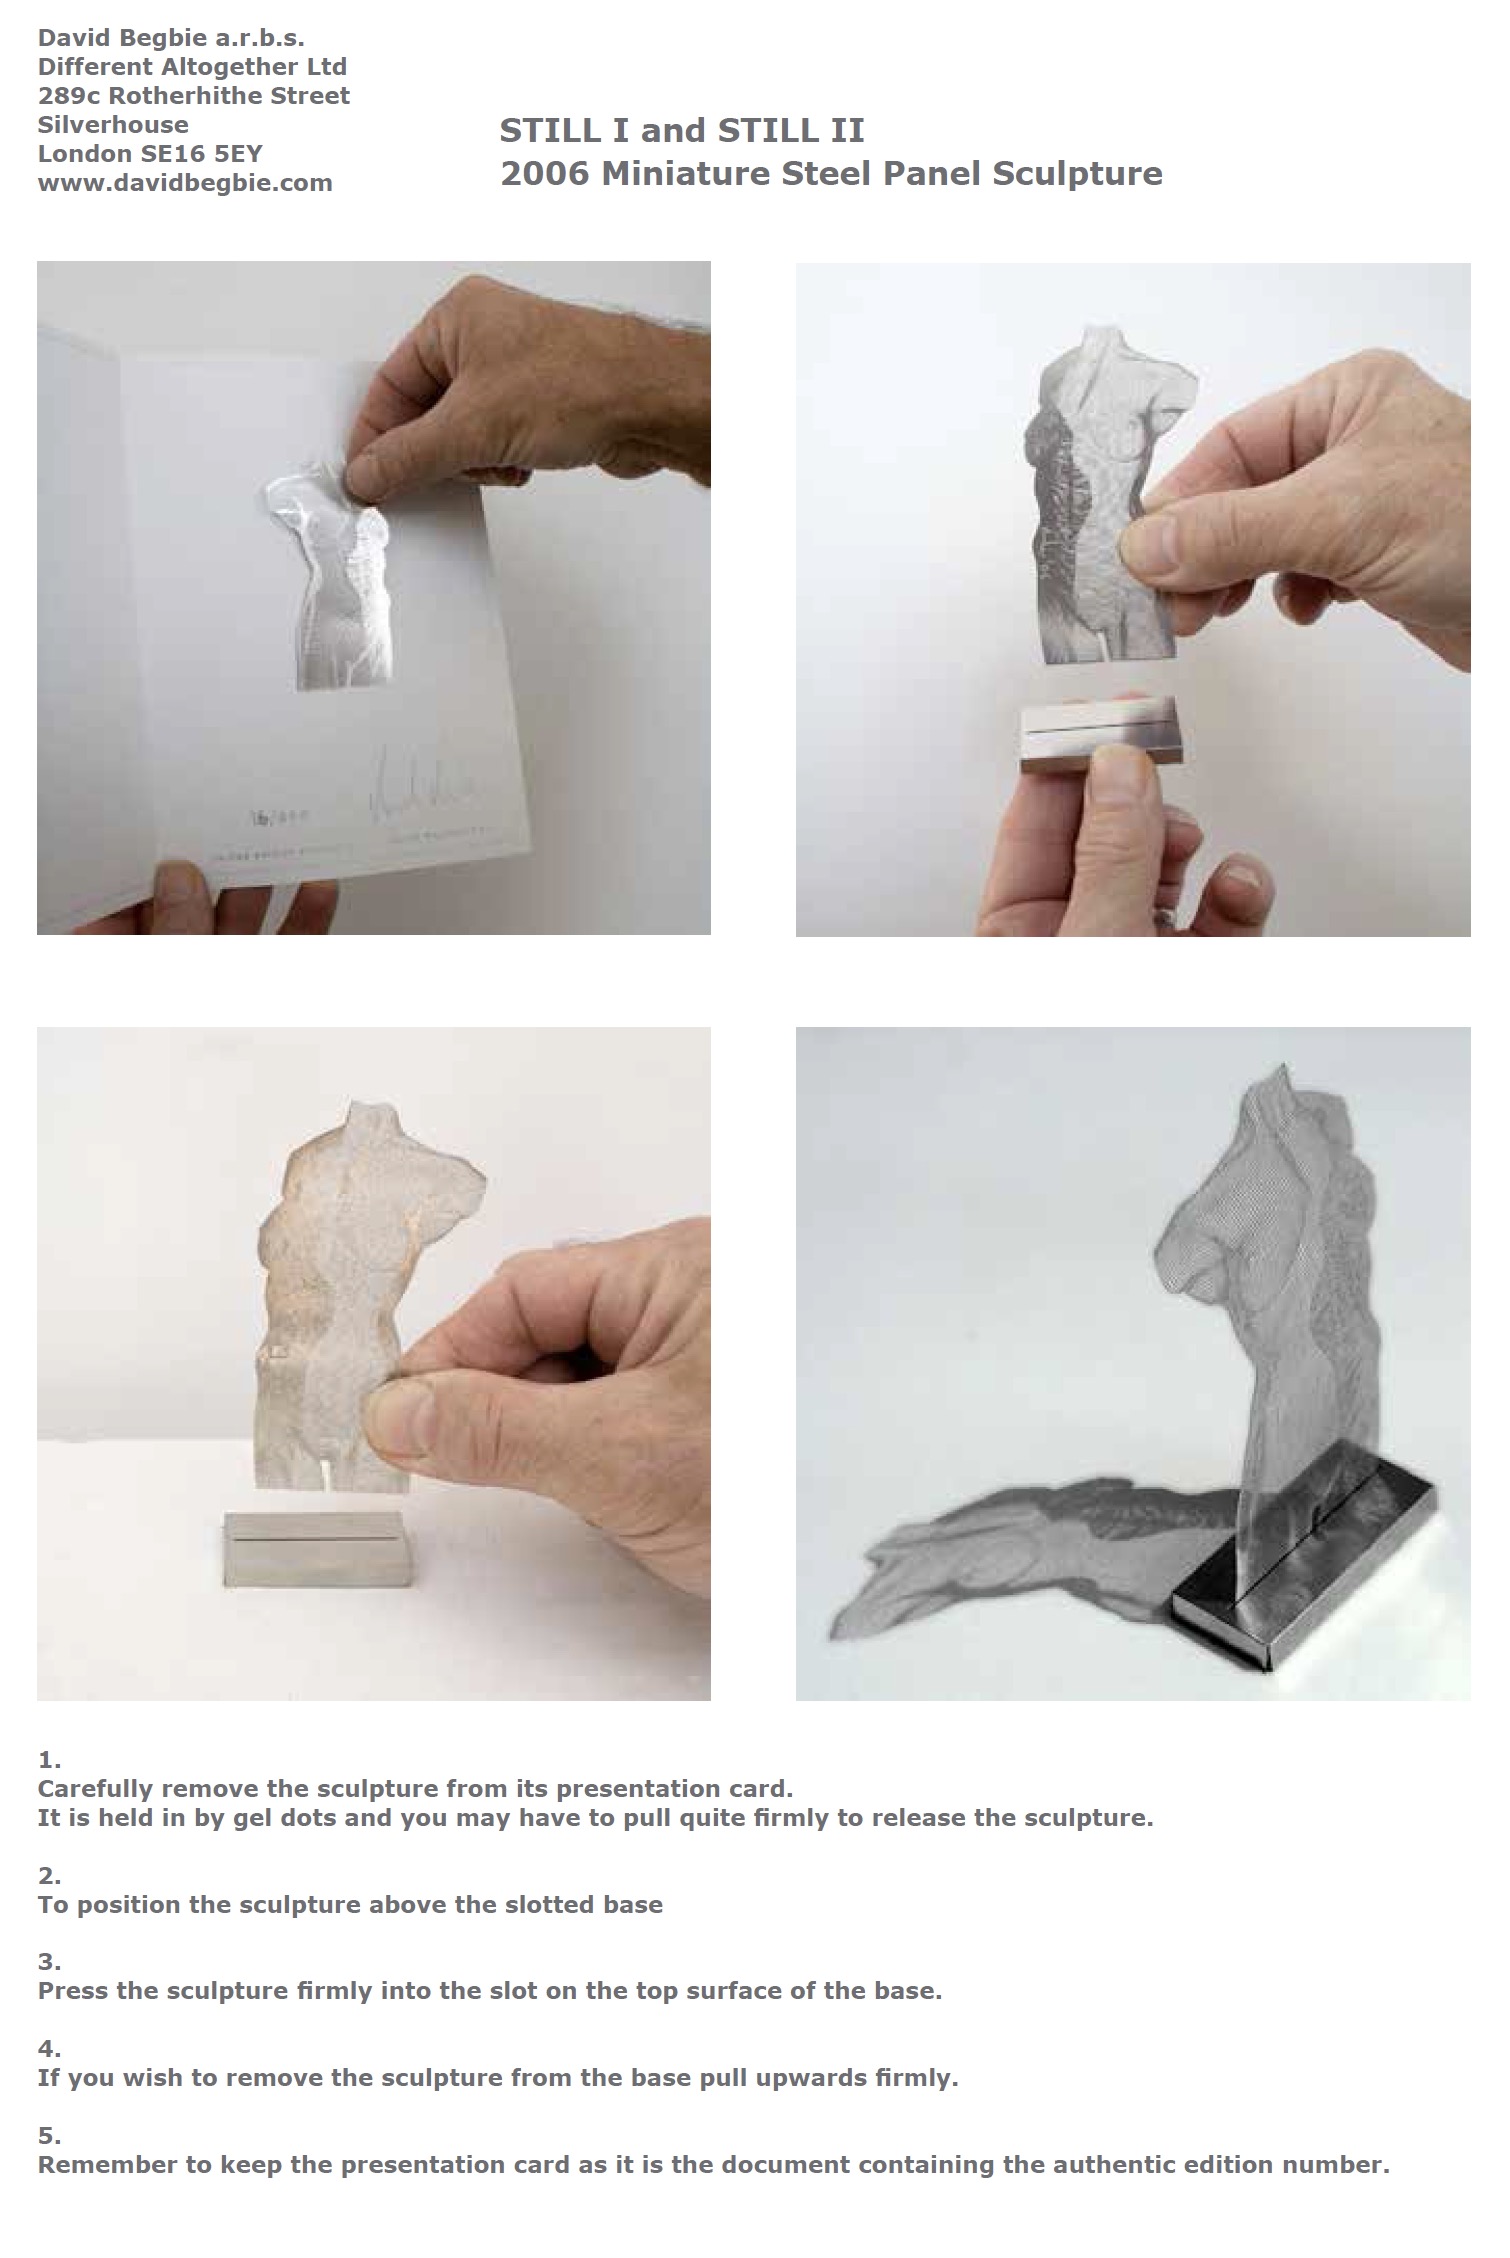 David Begbie sculpture miniature steel panel STILL instructions